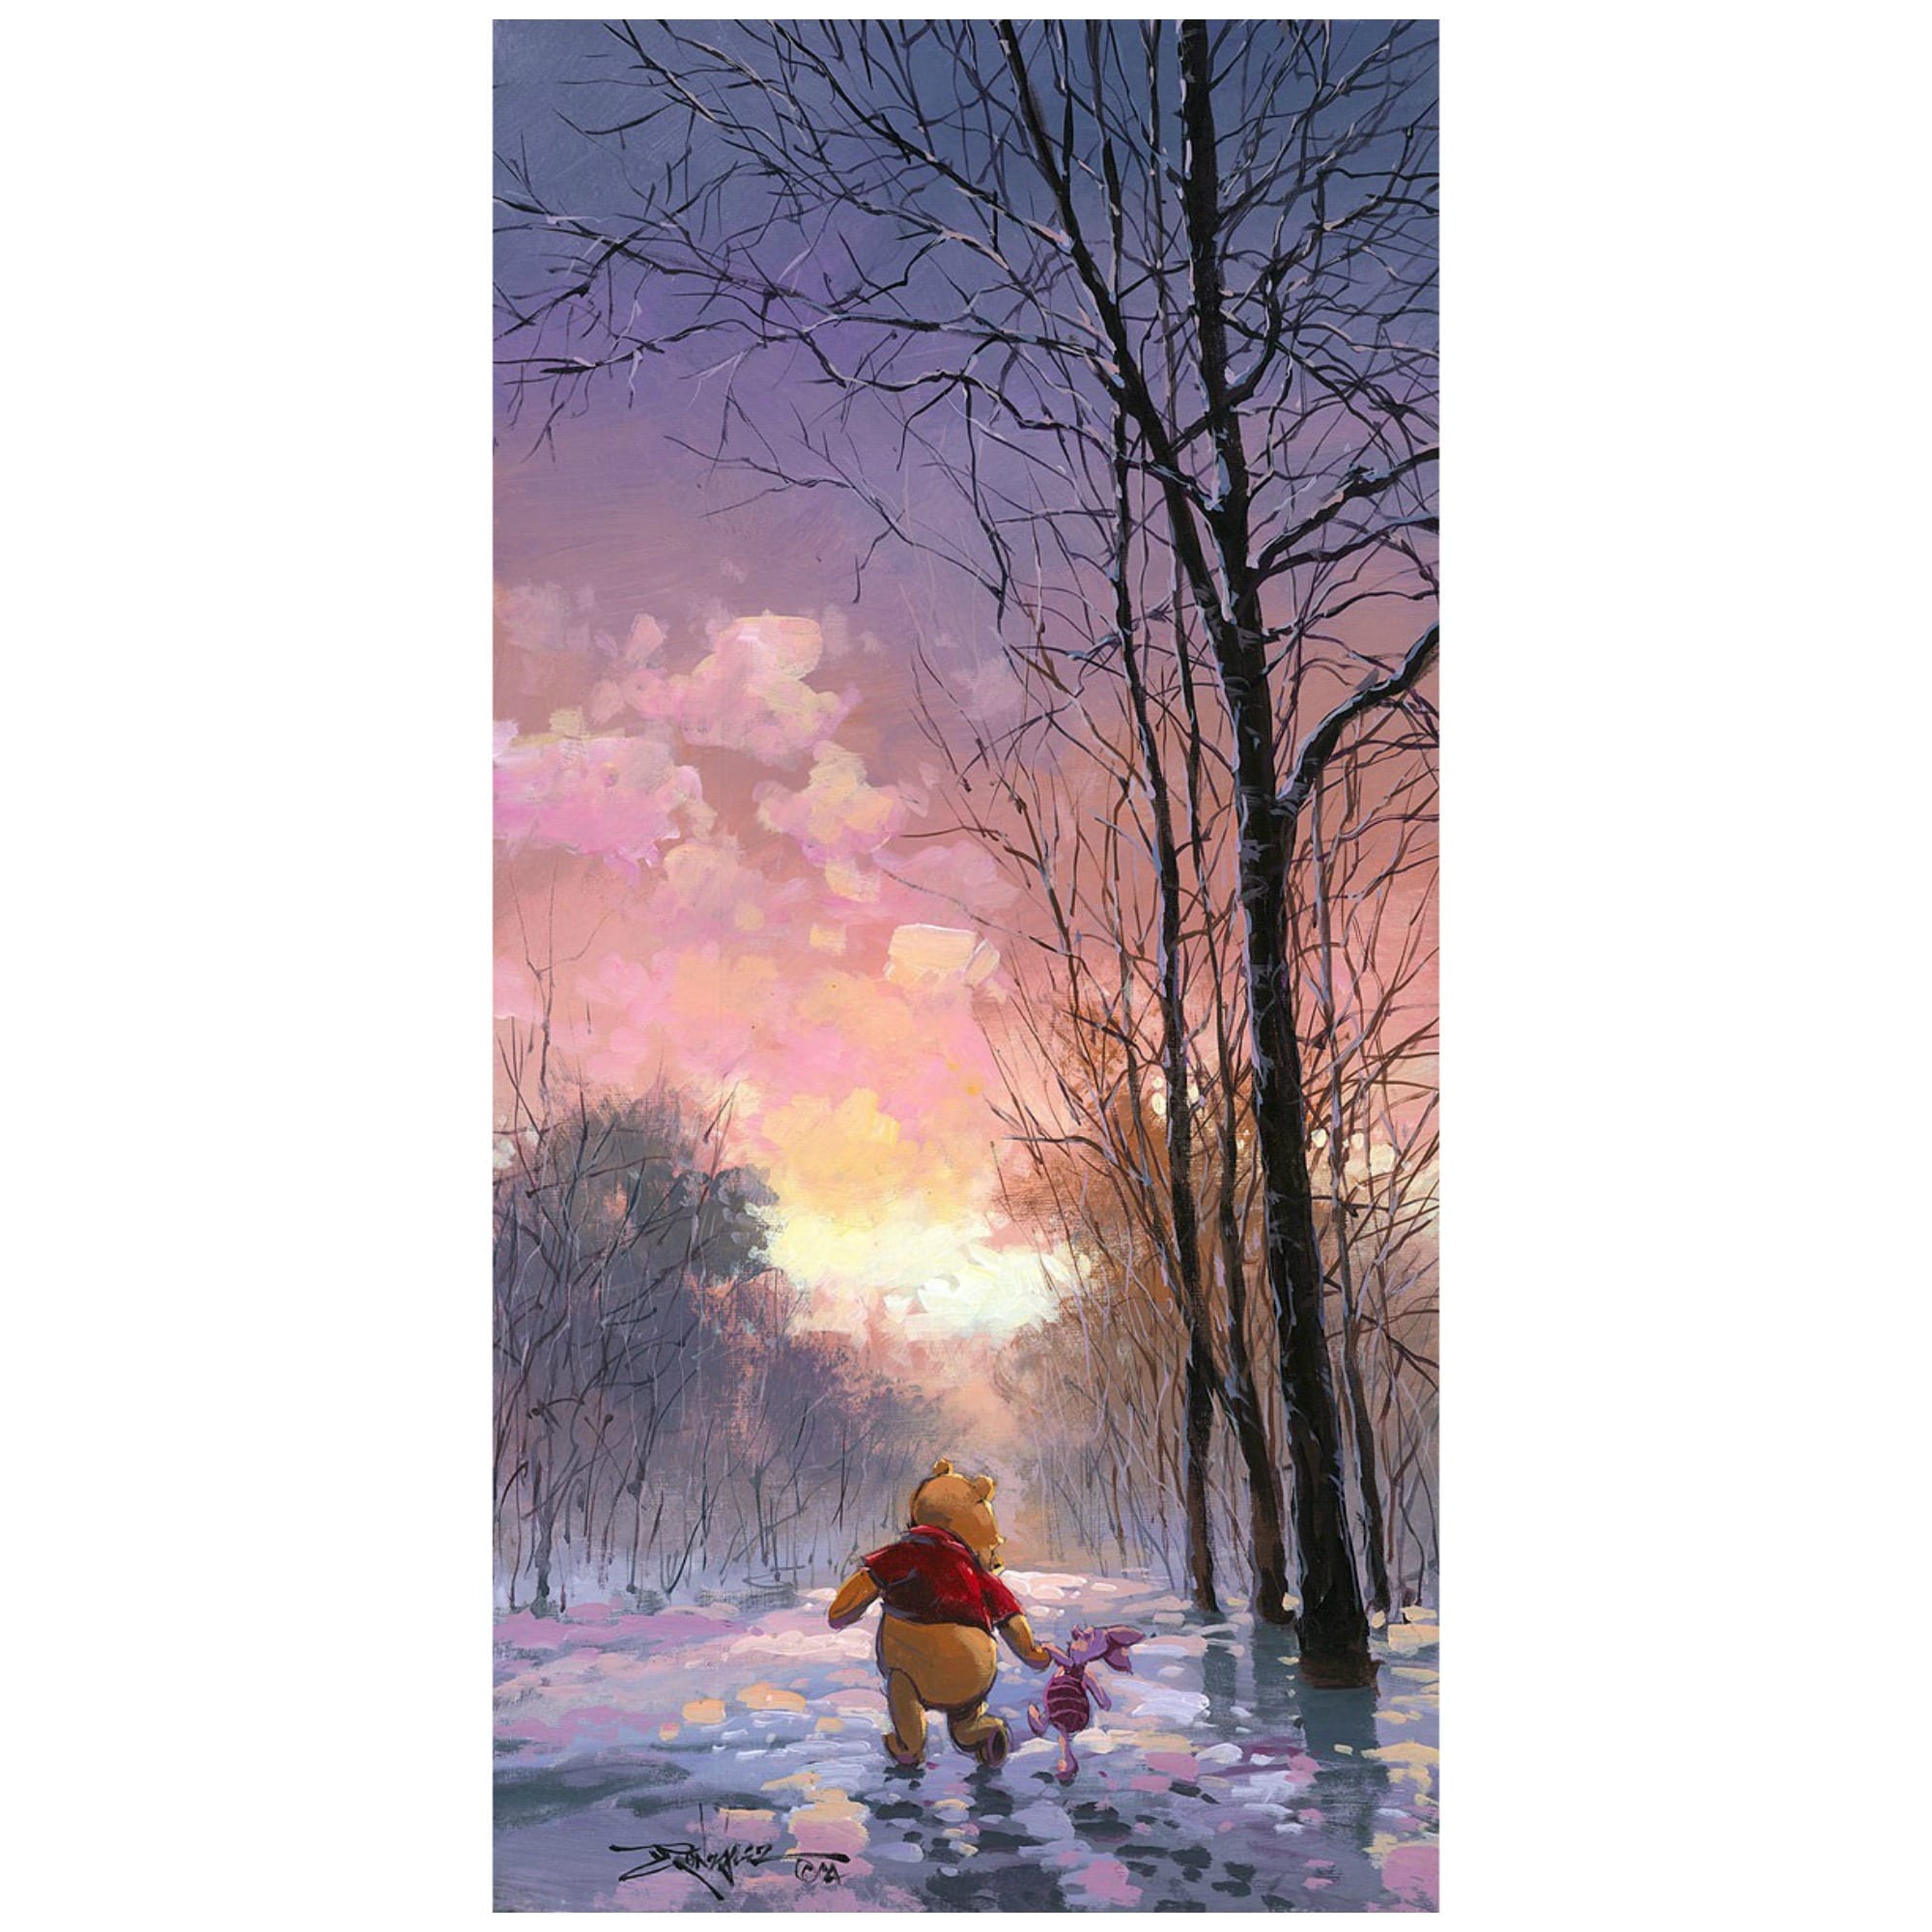 Snowy Path - Disney Treasures Edition